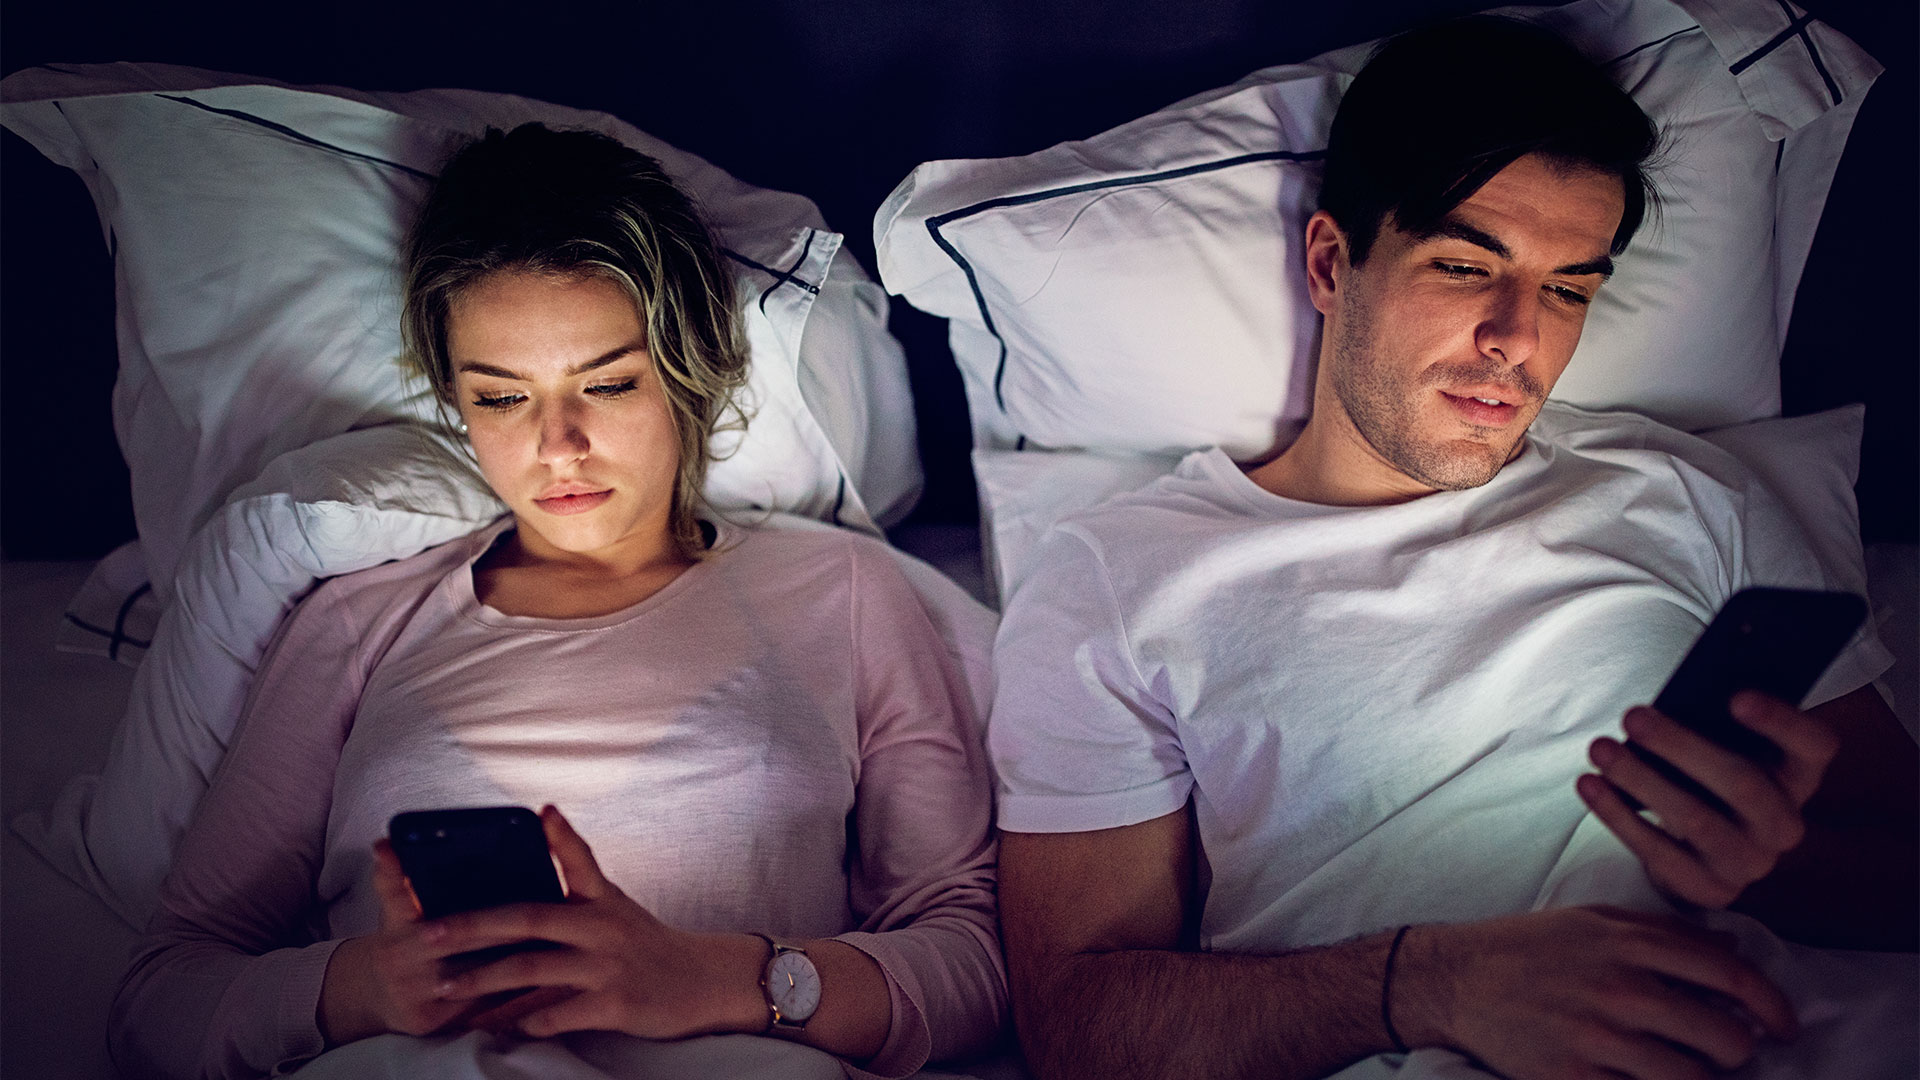 Las dificultades para conciliar el sueño se extienden entre adolescentes debido al uso excesivo de pantallas (Getty)